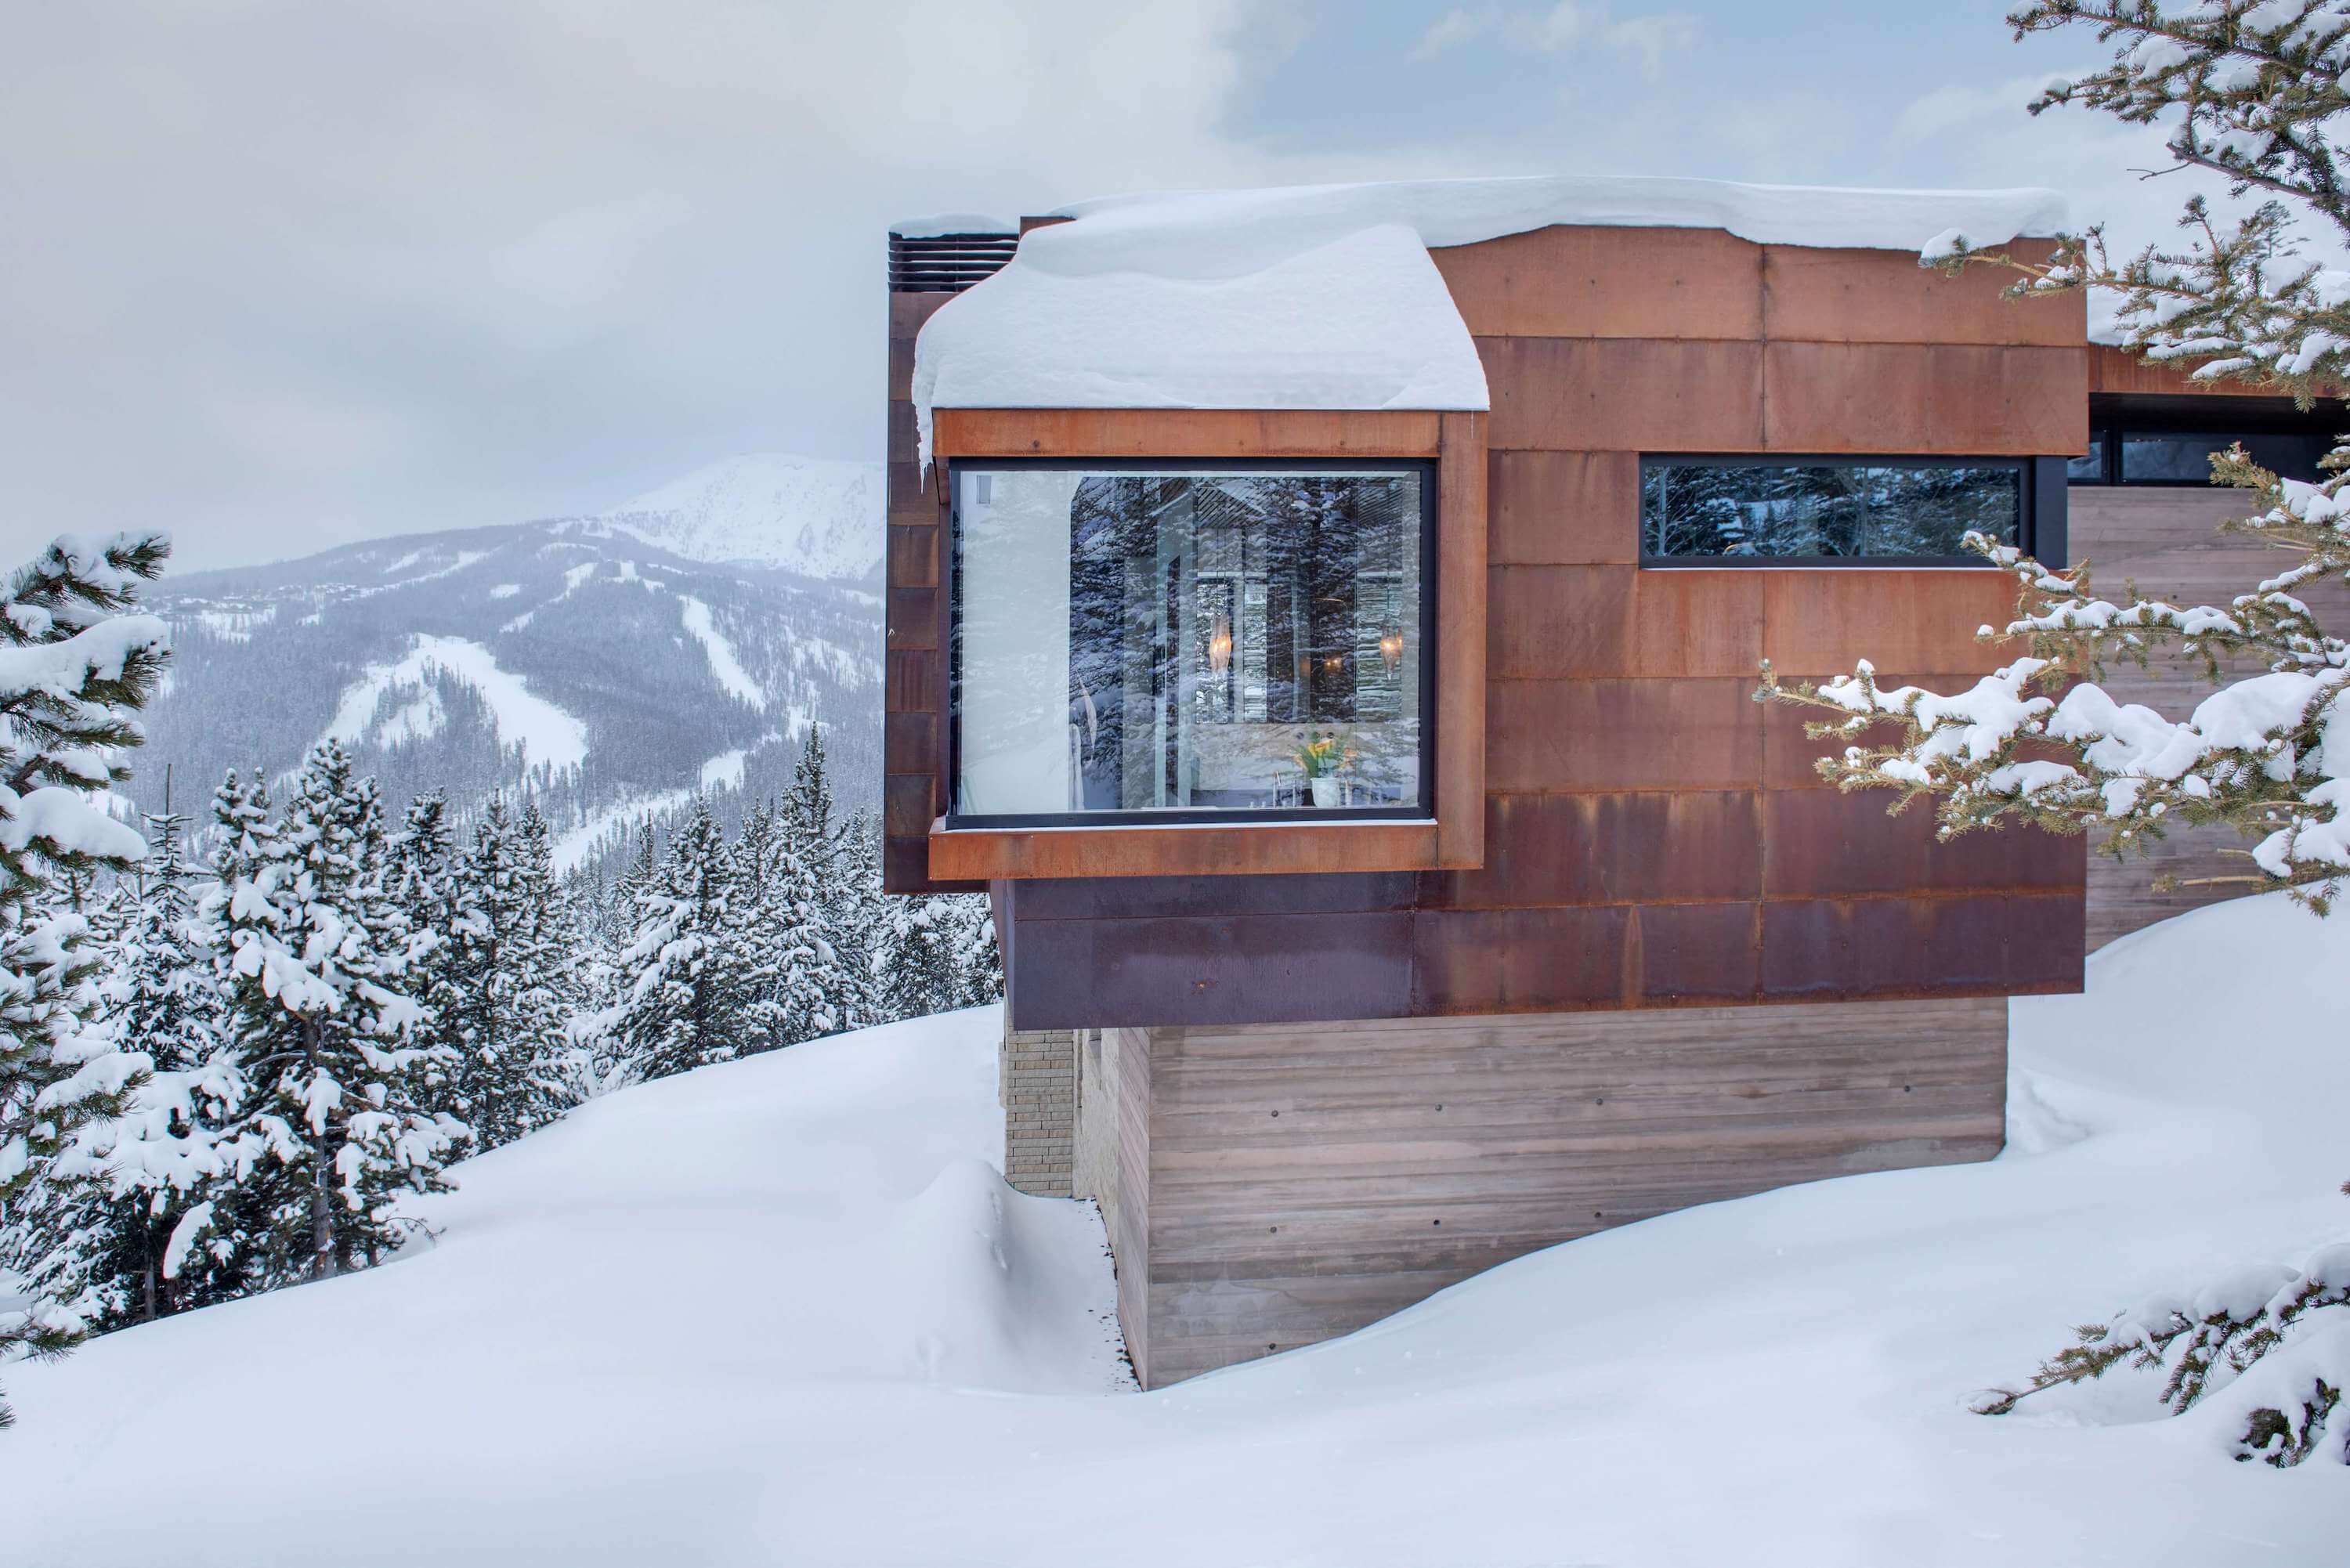 Yellowstone Residence by Stuart Silk Architects